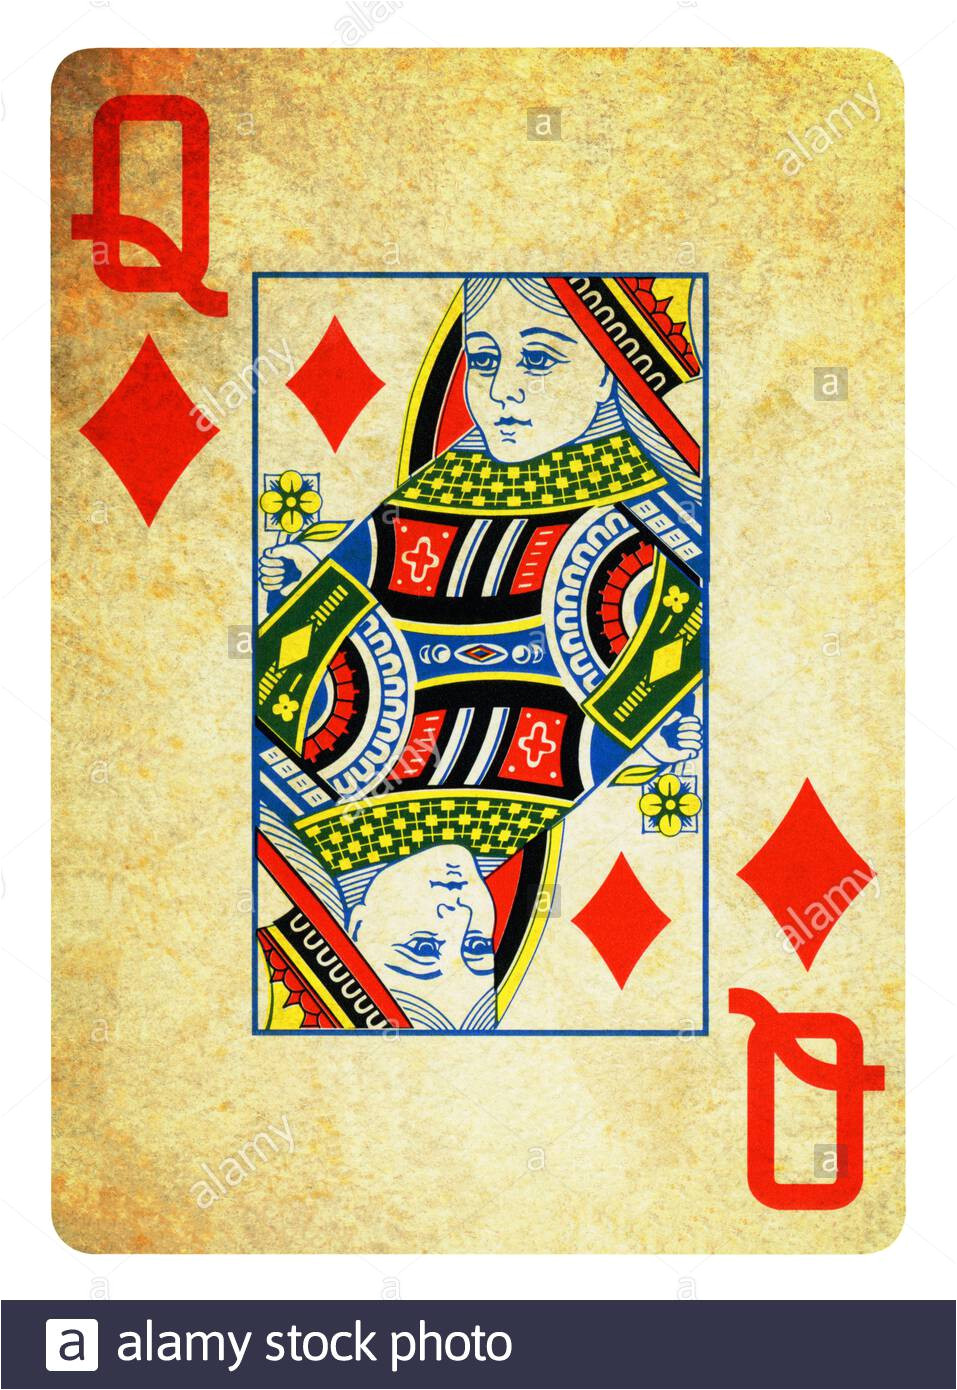 Queen Of Diamonds Life Card Queen Of Diamonds Stock Photos Queen Of Diamonds Stock